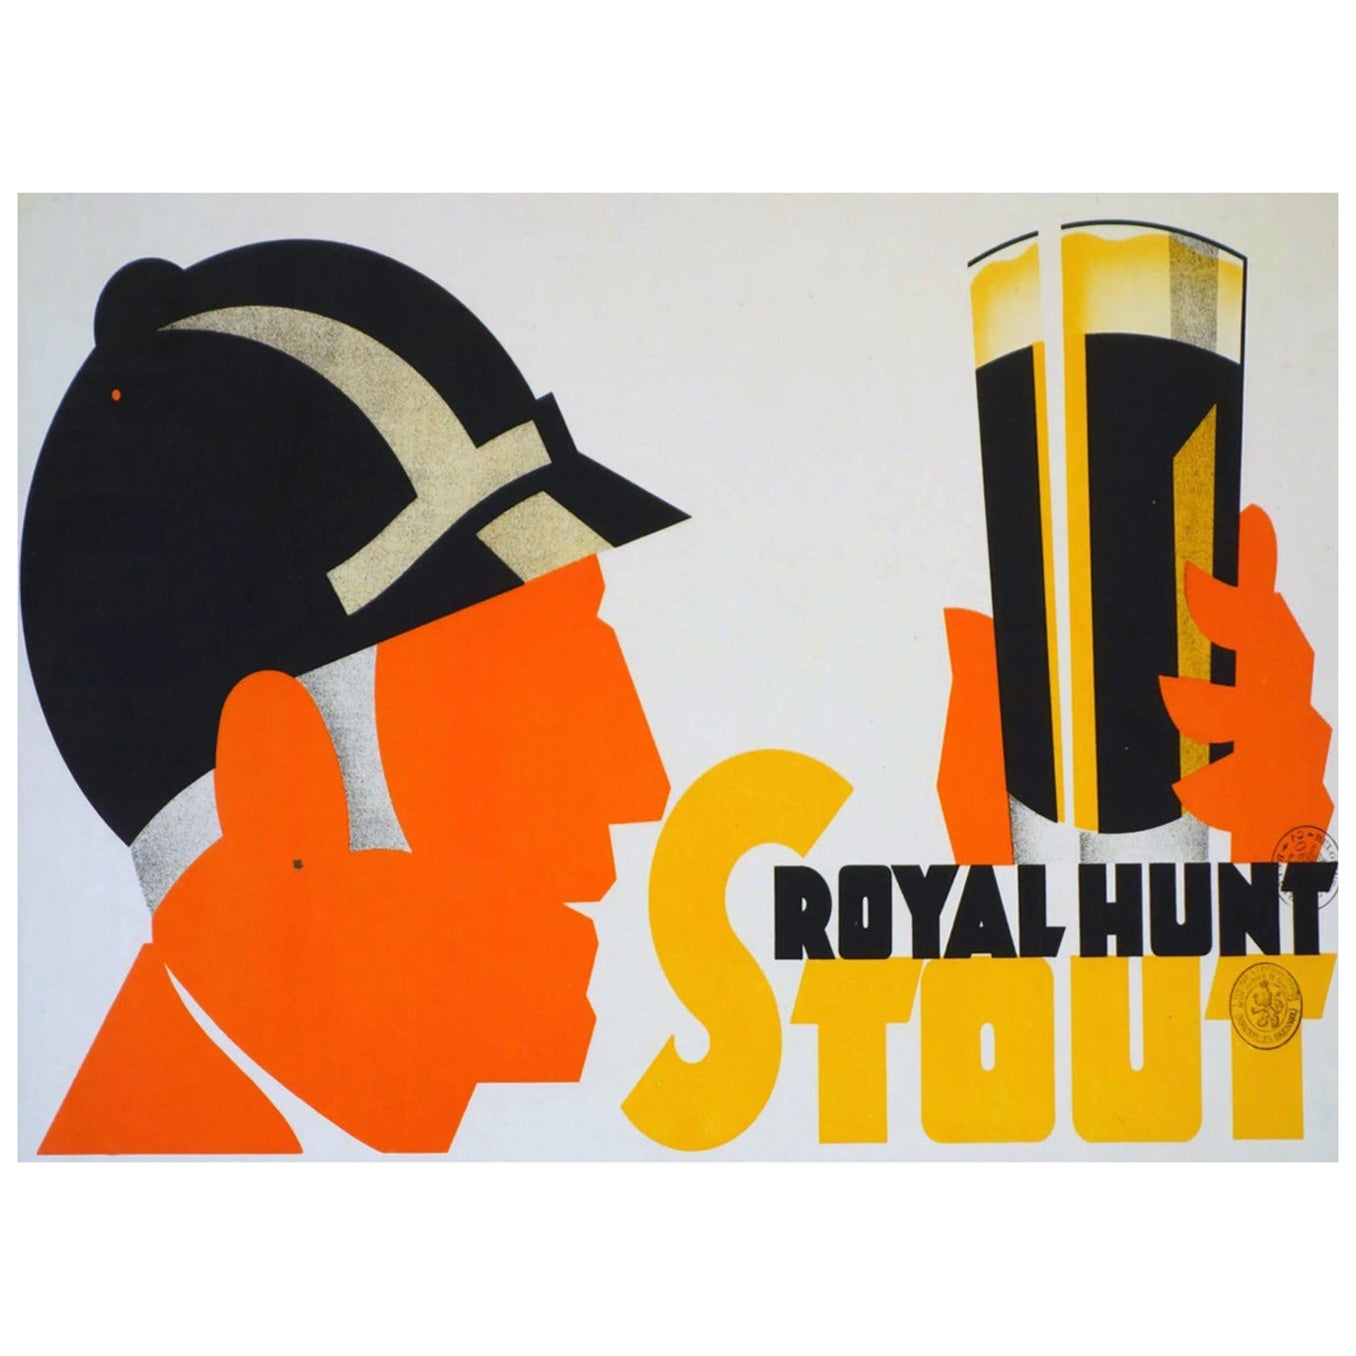 Affiche vintage d'origine Royal Hunt Stout de 1930